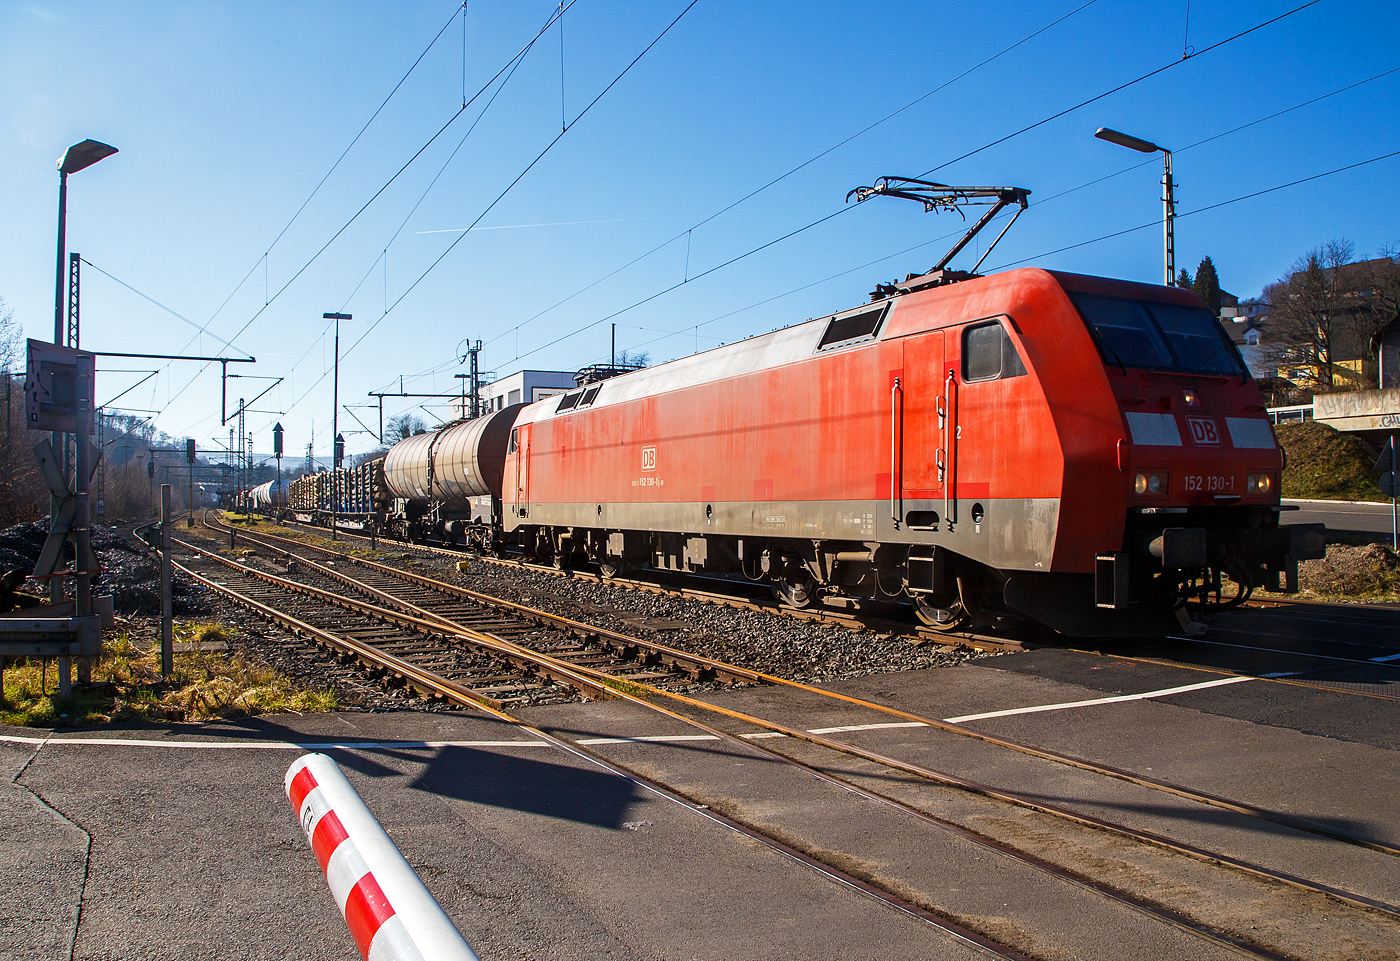 Die 152 130-1 (91 80 6152 130-1 D-DB) der DB Cargo AG fährt am 14.02.2023 mit einem gemischten Güterzug durch Niederschelderhütte, hier beim Bü 343 (km 112,183) kurz vor Niederschelden bzw. der Landesgrenze zu NRW, in Richtung Siegen.

Die Siemens ES64F wurde 2000 noch von Krauss-Maffei in München-Allach unter der Fabriknummer 20257 gebaut.